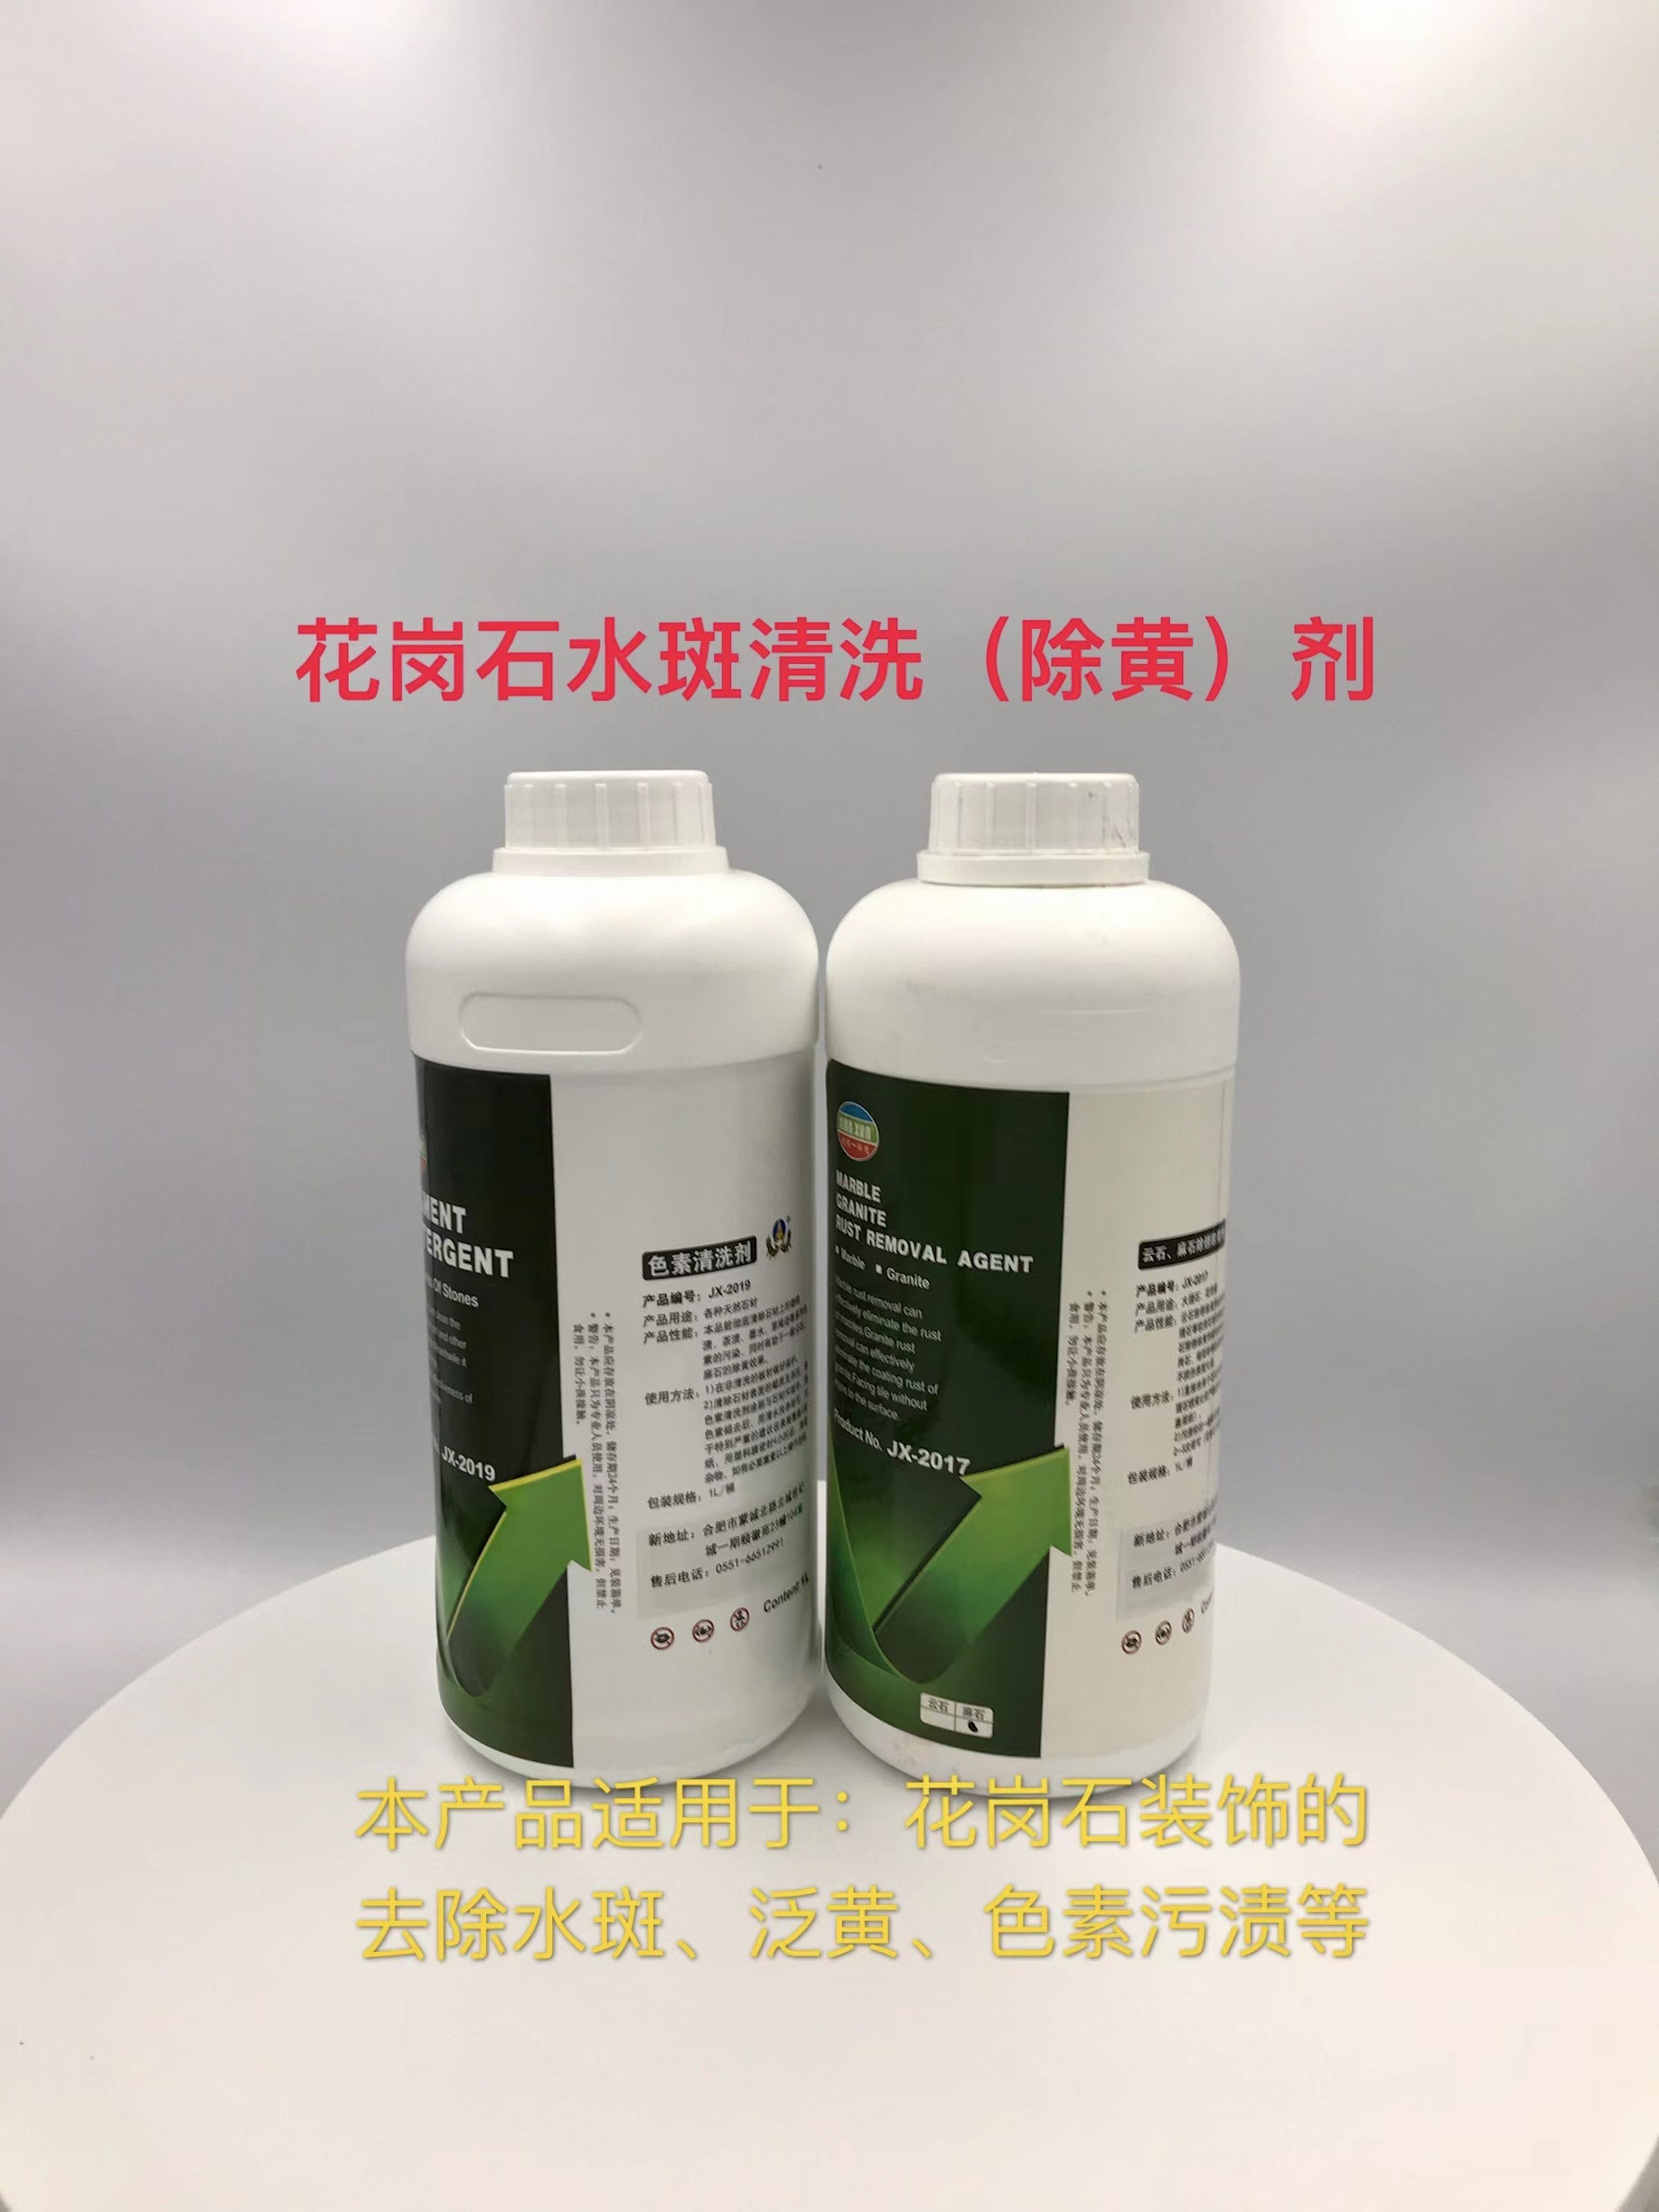 JX-2017麻石除黄剂生产厂家销售批发价格 建讯石材